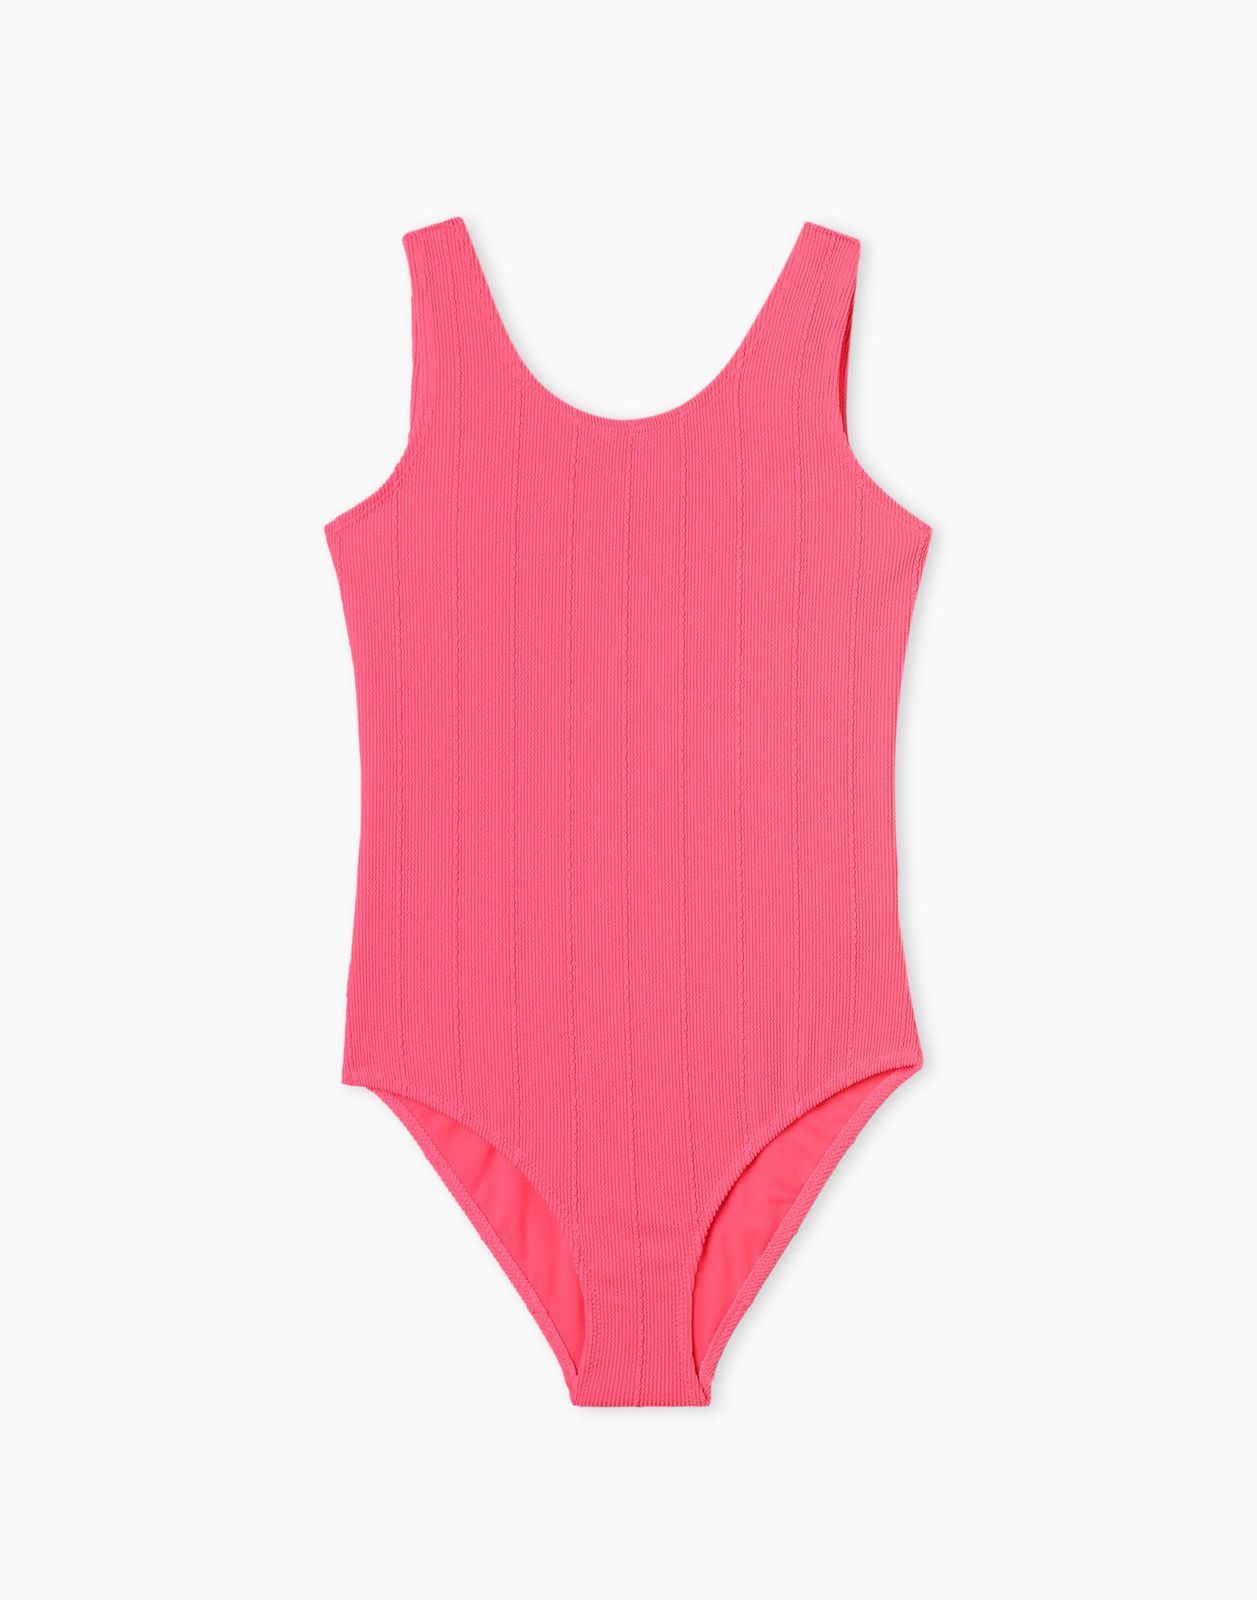 Слитный купальник для девочки Gloria Jeans GSM001671 ярко-розовый 8-10л/140